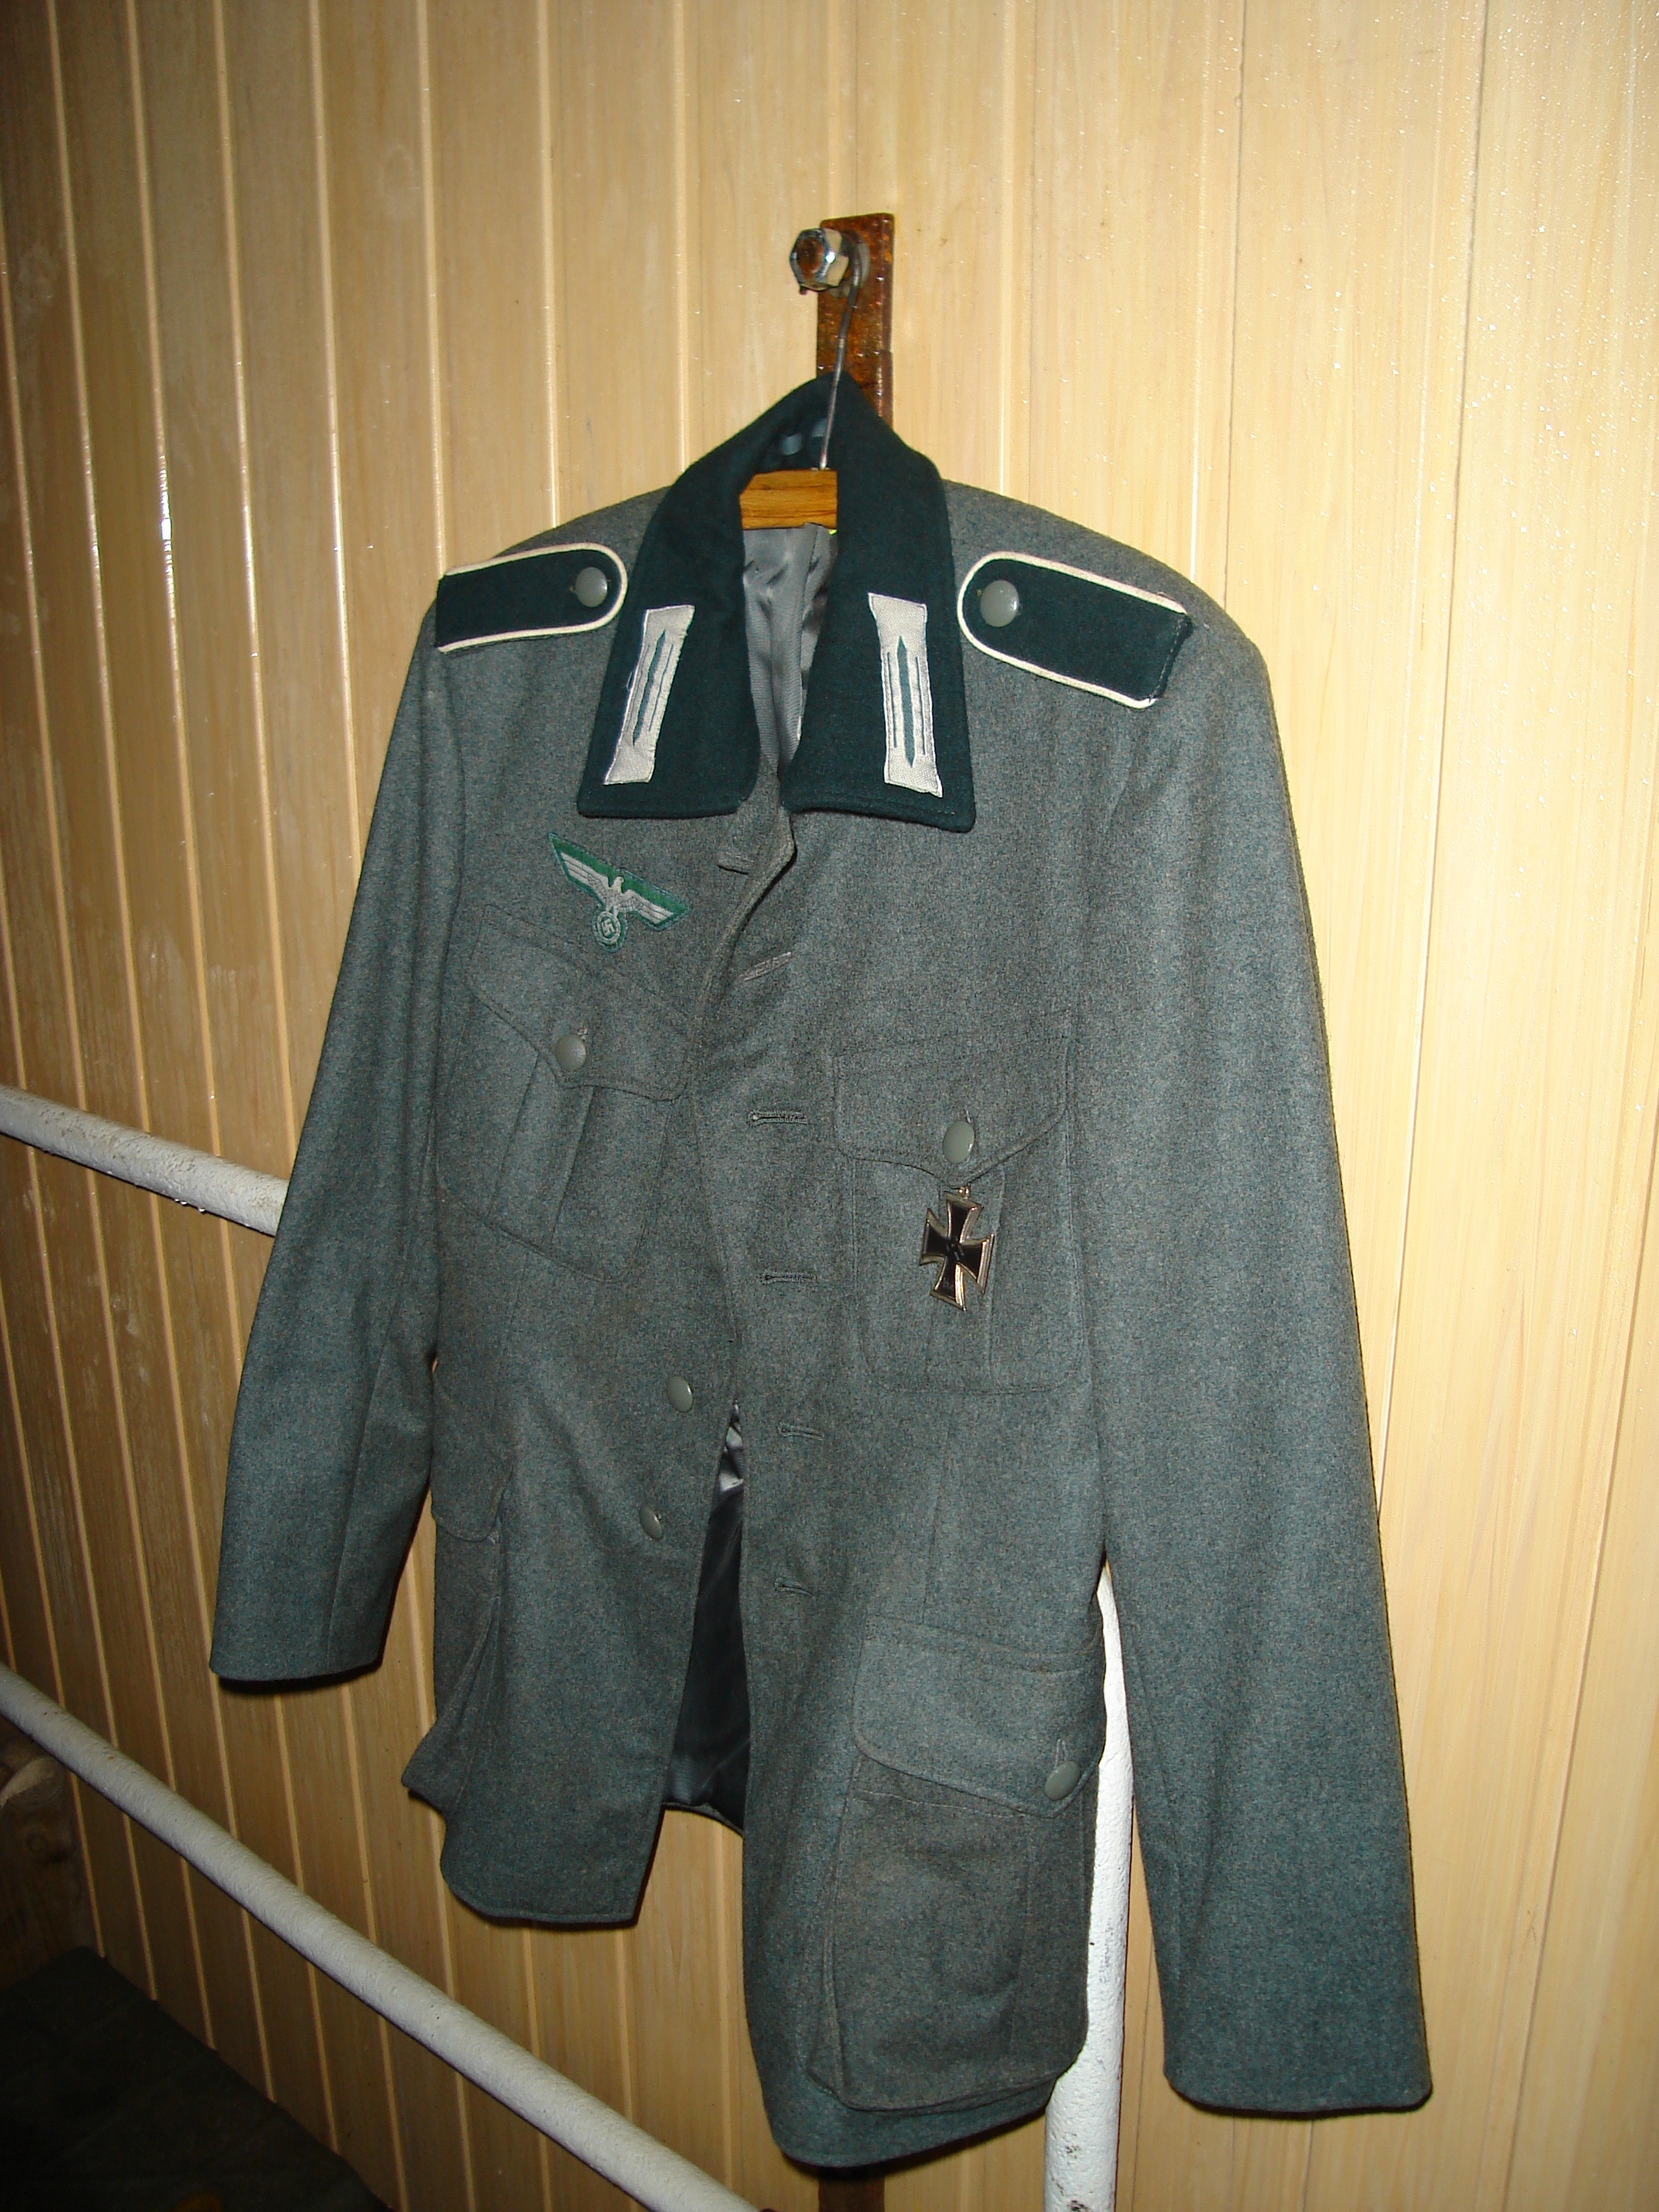 Wehrmacht uniforms   Military Wiki   Fandom